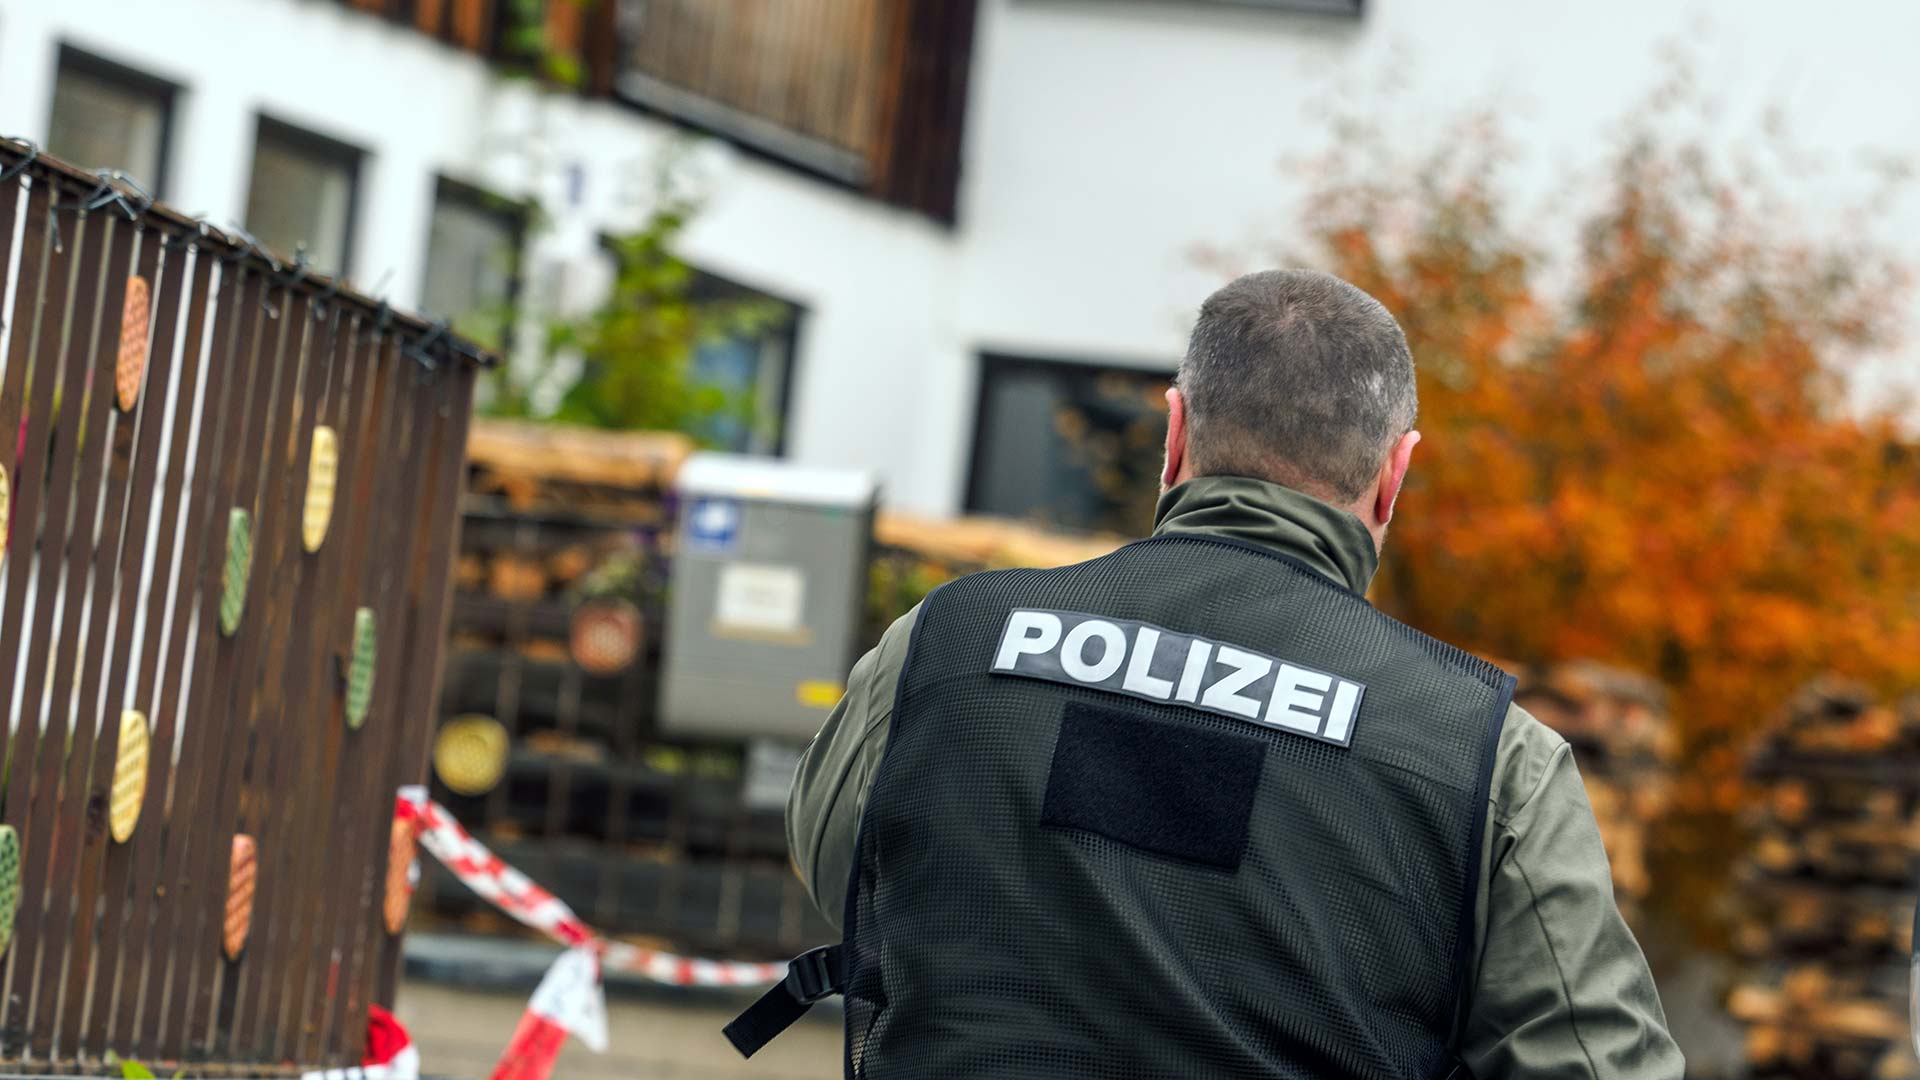 Una organización neonazi preparaba atentados contra políticos y refugiados en Alemania